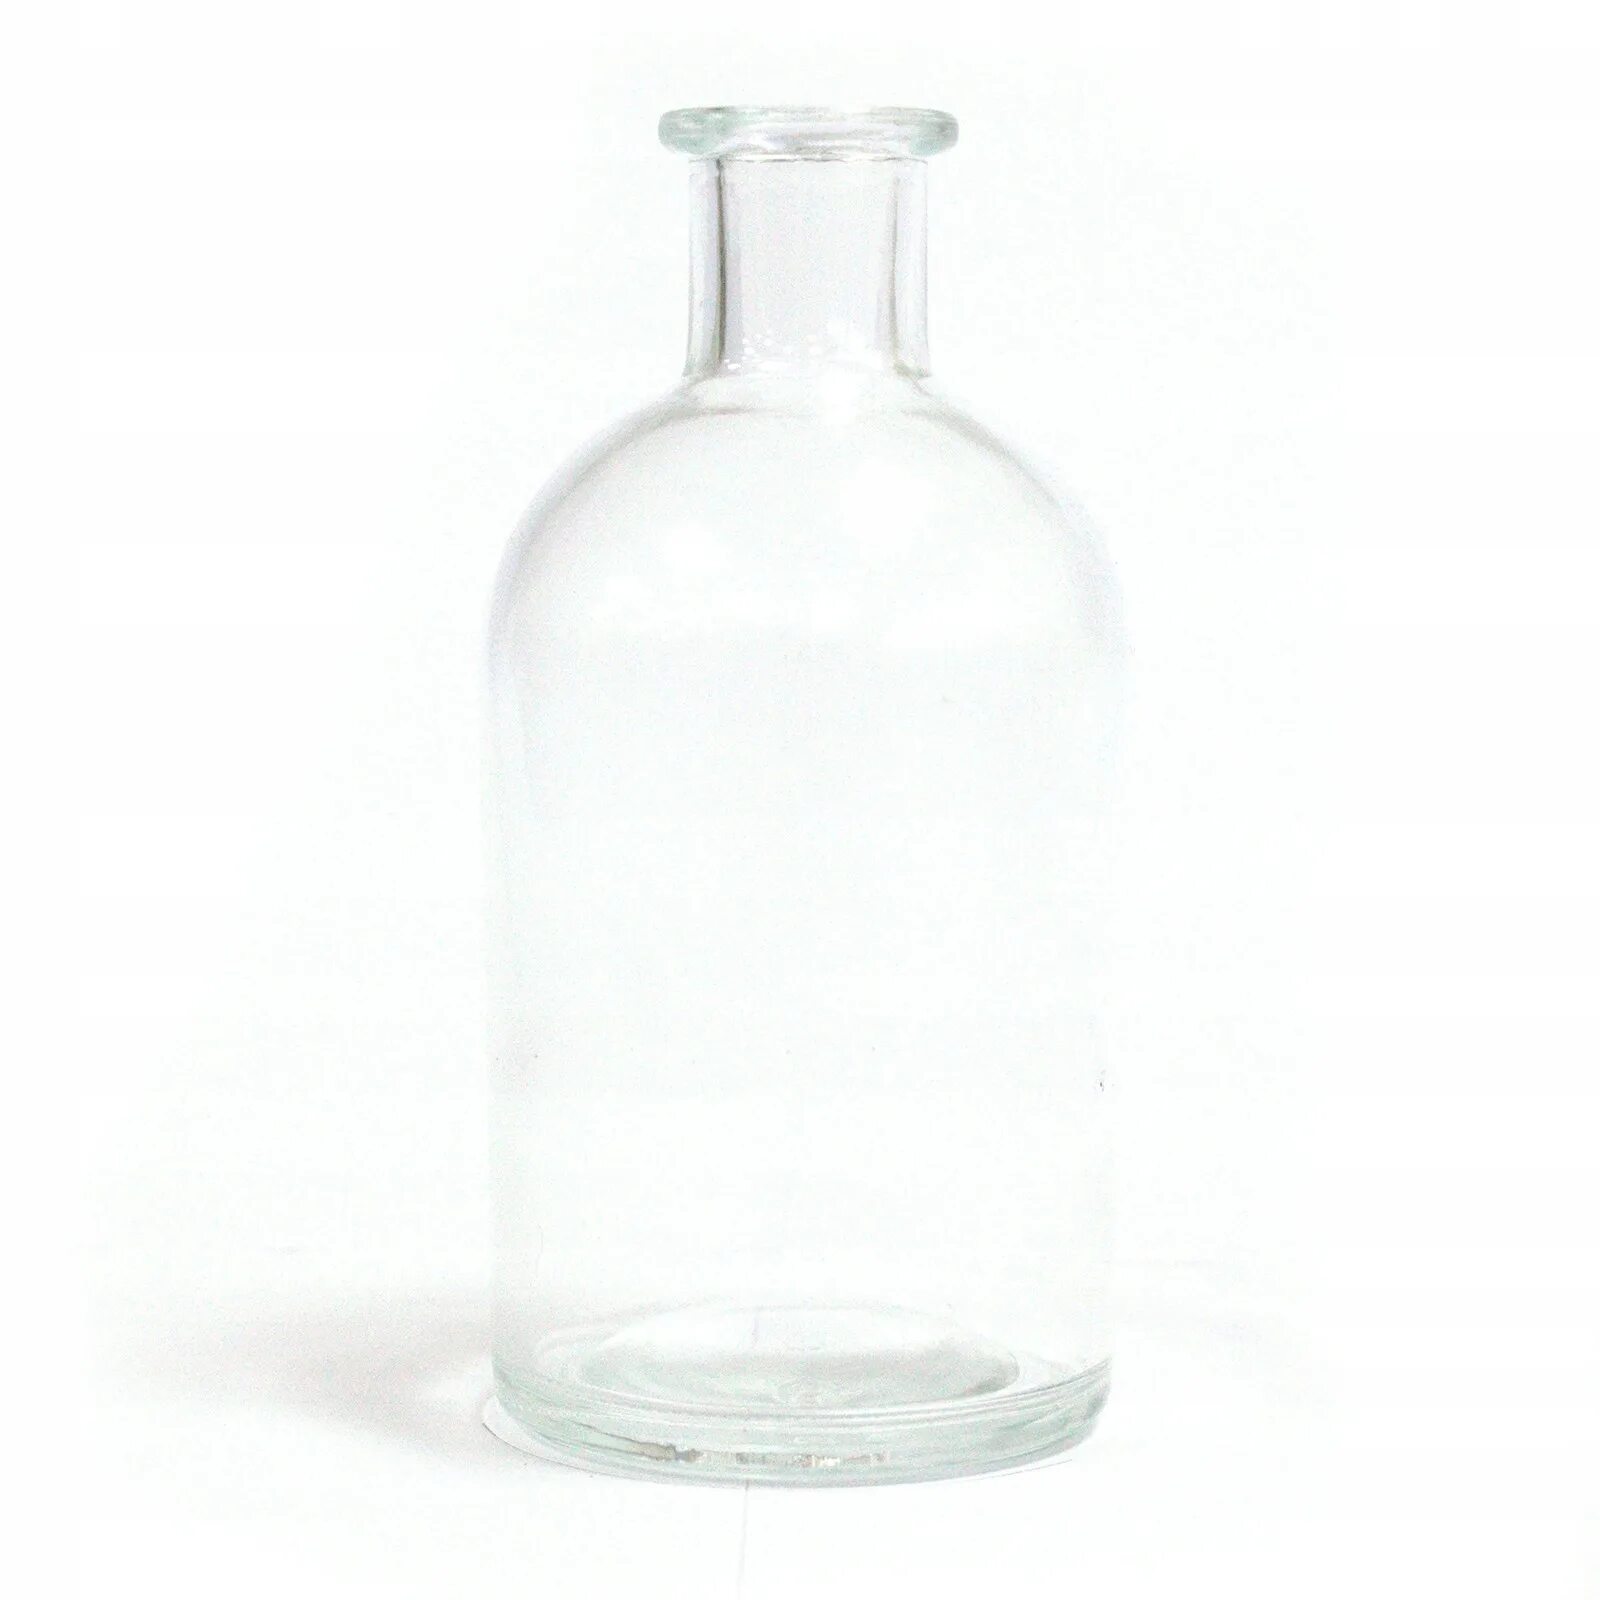 Бутылка круглая стеклянная. Бутылка стеклянная 250 мл круглая. Флакон стекло 250 мл. Круглая плоская бутылка. Круглые бутылочки